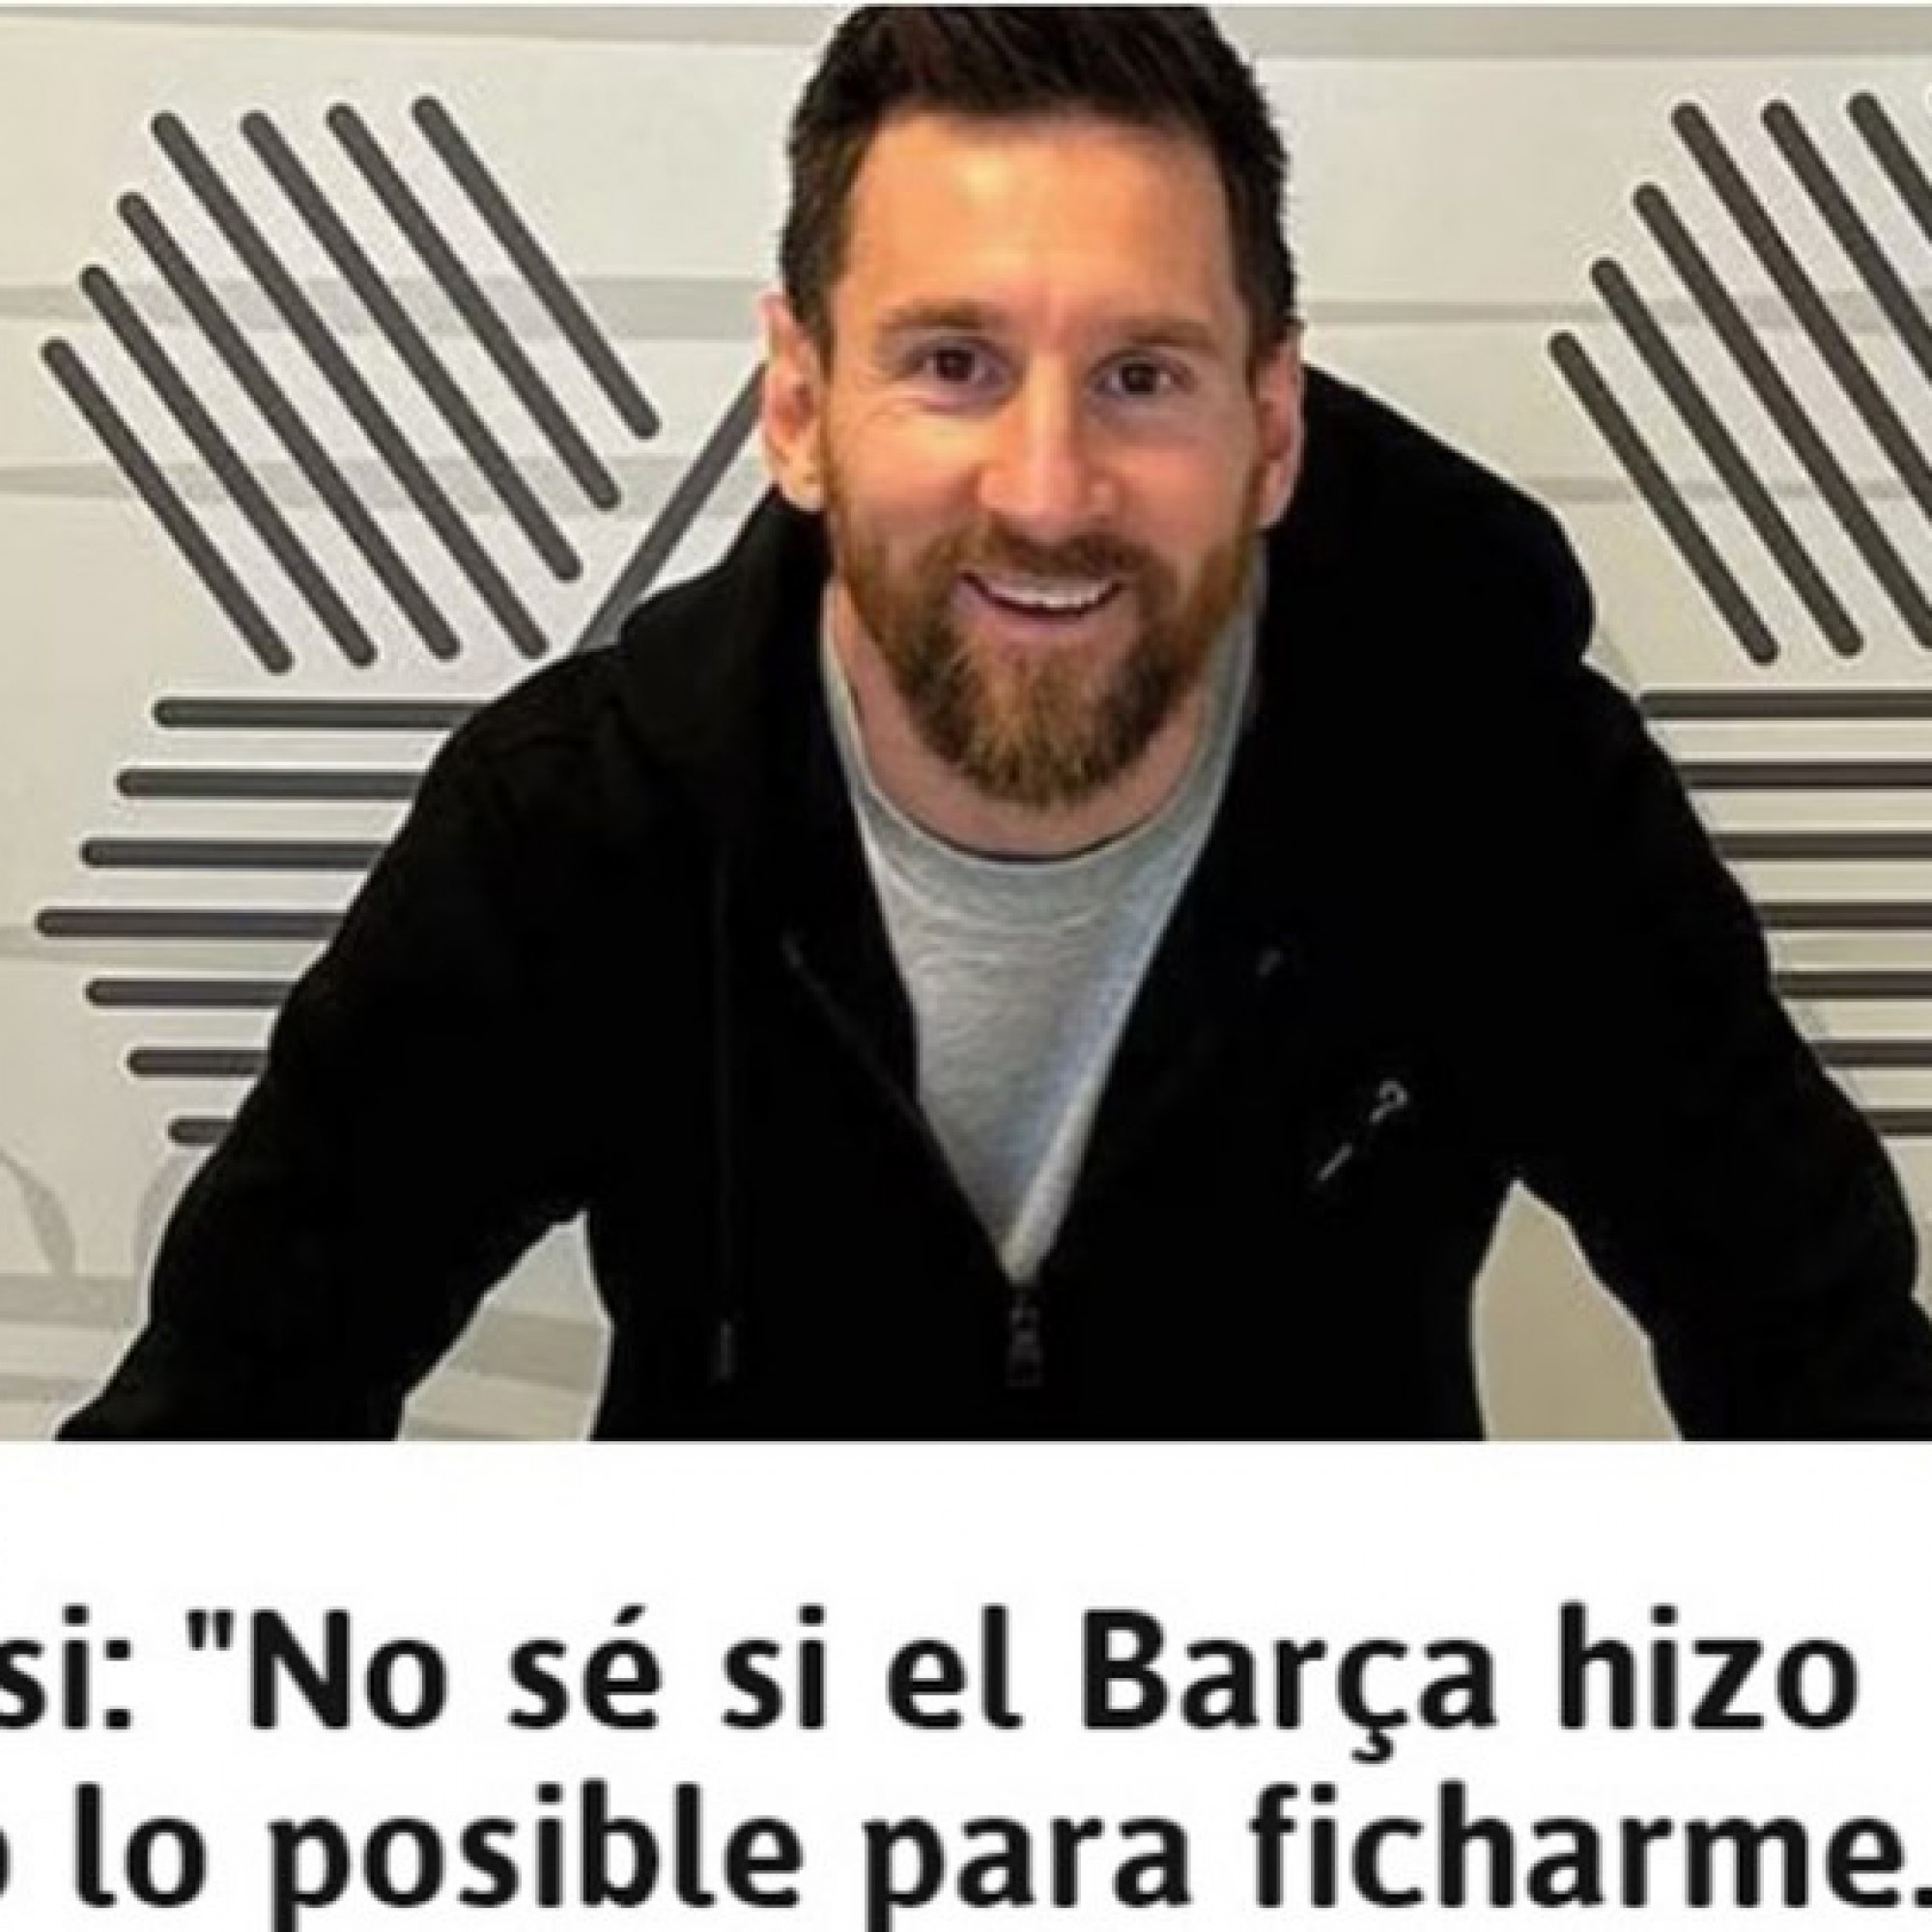  - Messi chọn tới Inter Miami thay vì Barcelona: Báo Tây Ban Nha chỉ trích chủ tịch Laporta